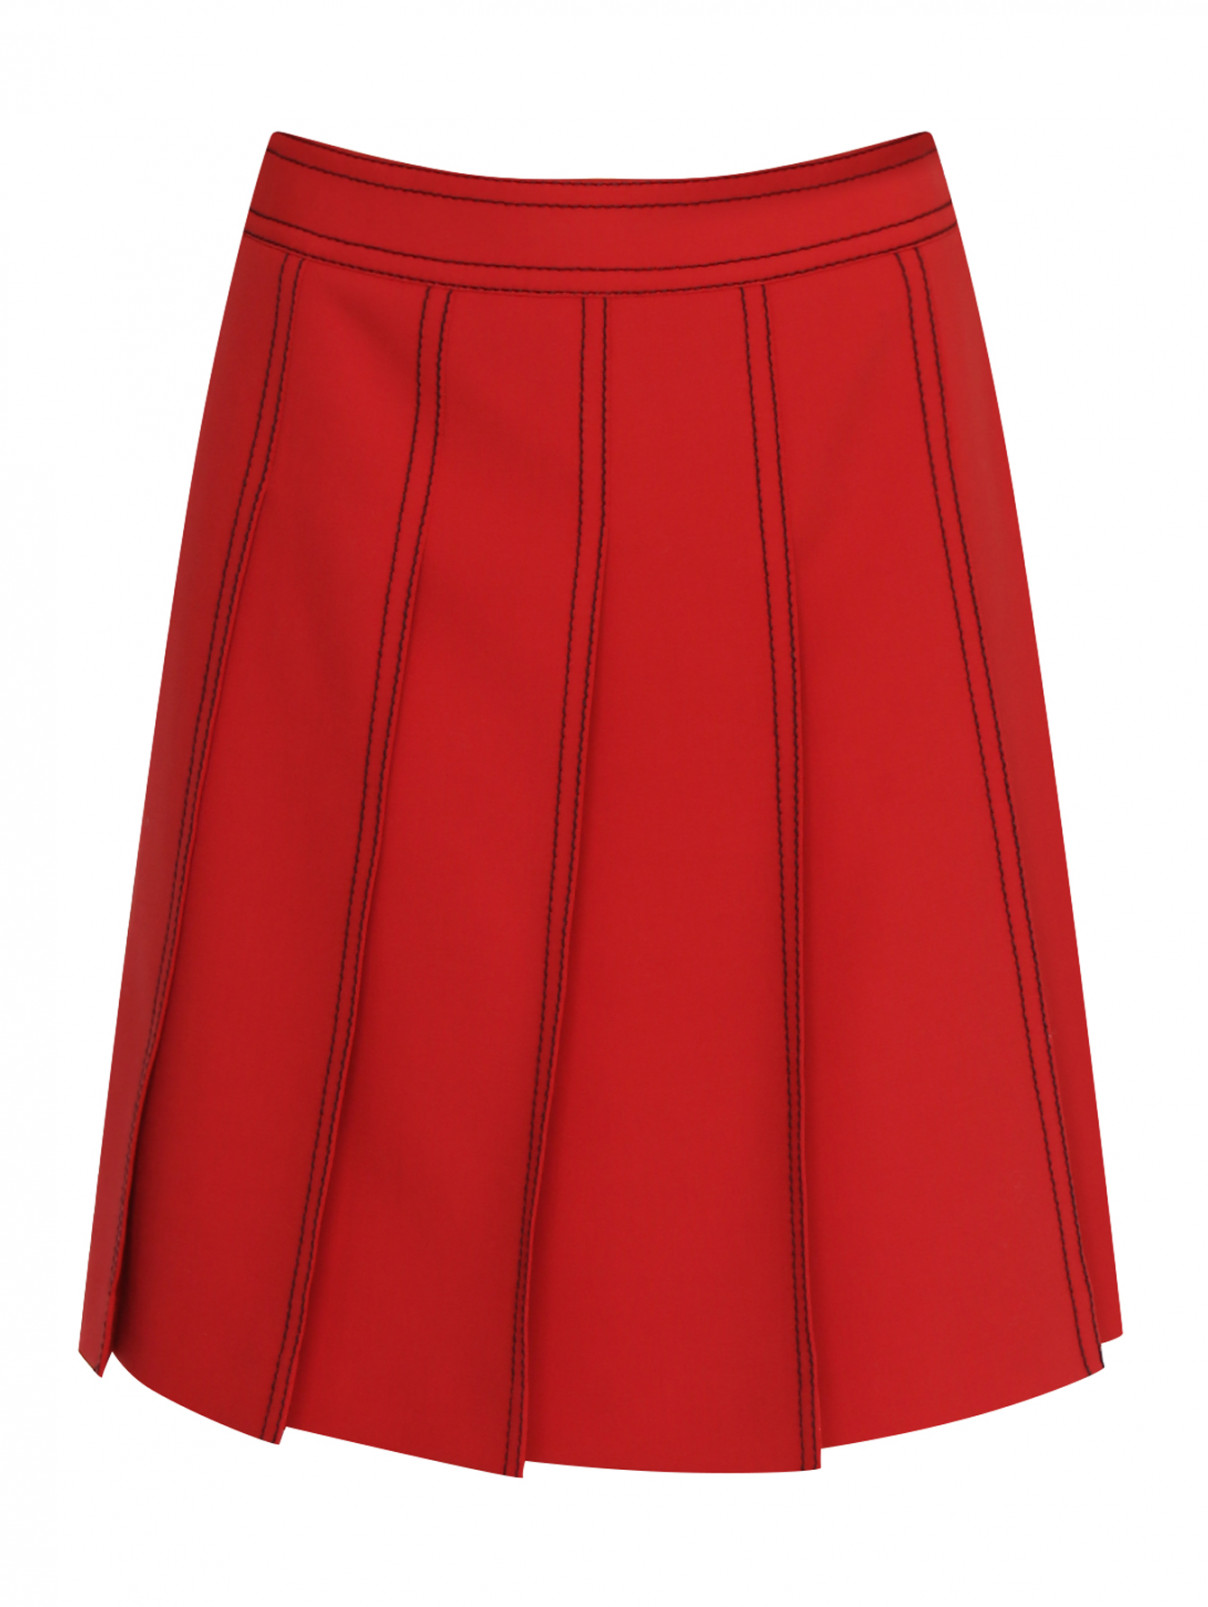 Юбка из шерсти в складку с контрастной отделкой Moschino Boutique  –  Общий вид  – Цвет:  Красный